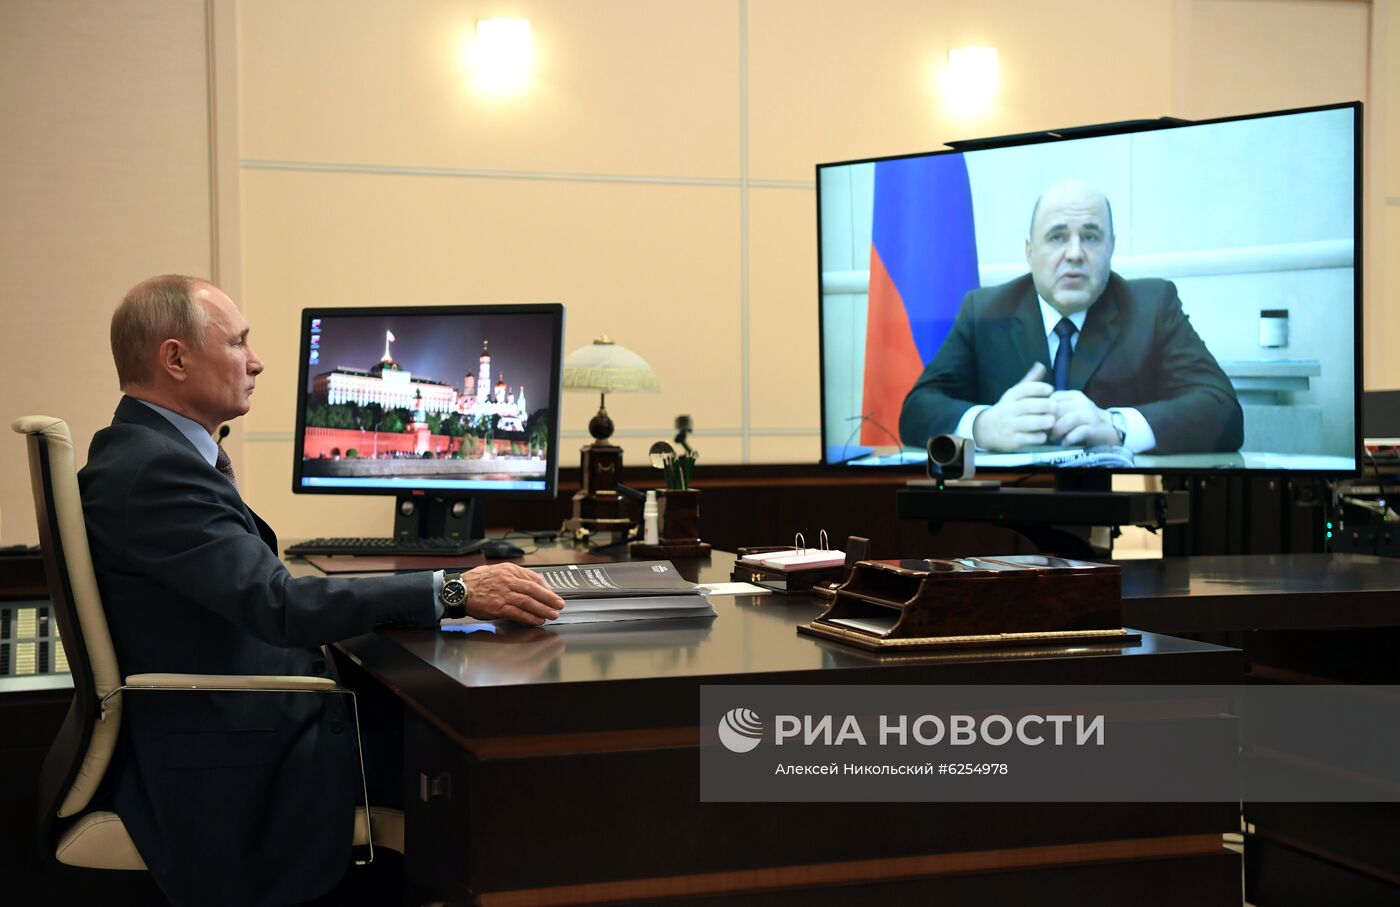 Президент РФ В. Путин провел встречу с премьер-министром РФ М. Мишустиным